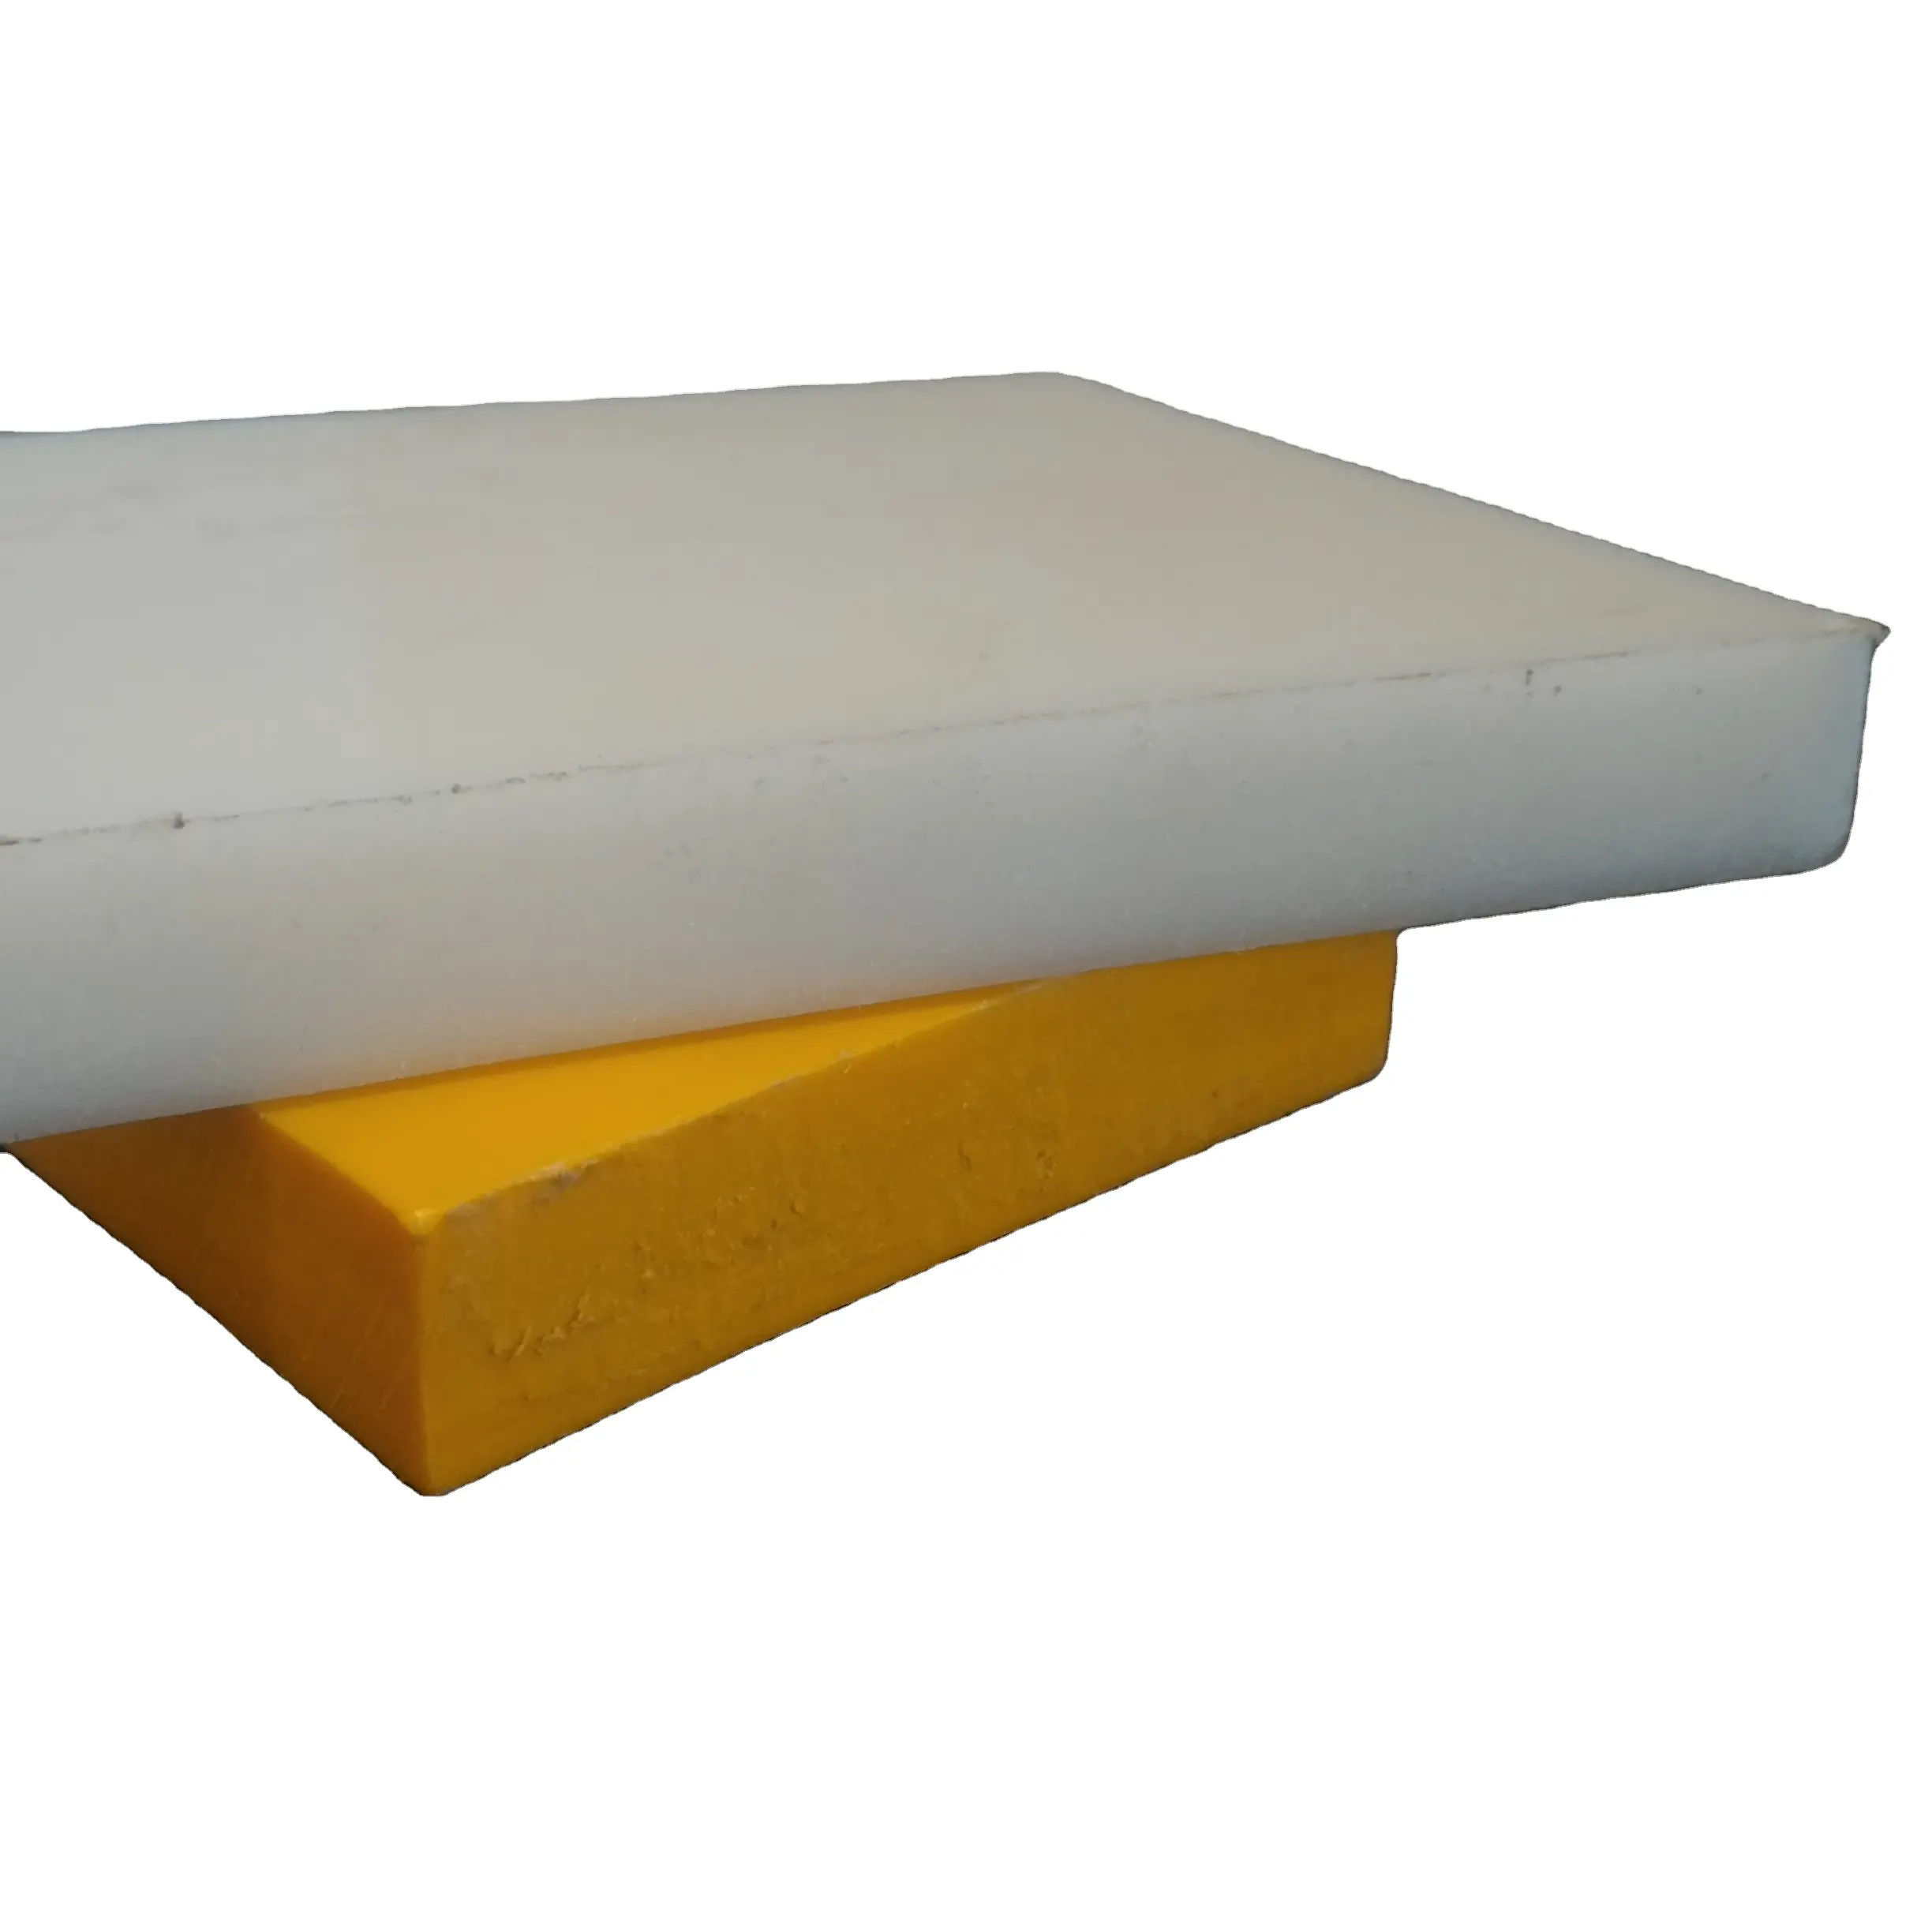 UPバージングレードプラスチックシートuhmwpeソリッドシートホワイトカラー2 ~ 100 mm厚の強いポリマーISO 9001:2015認定企業